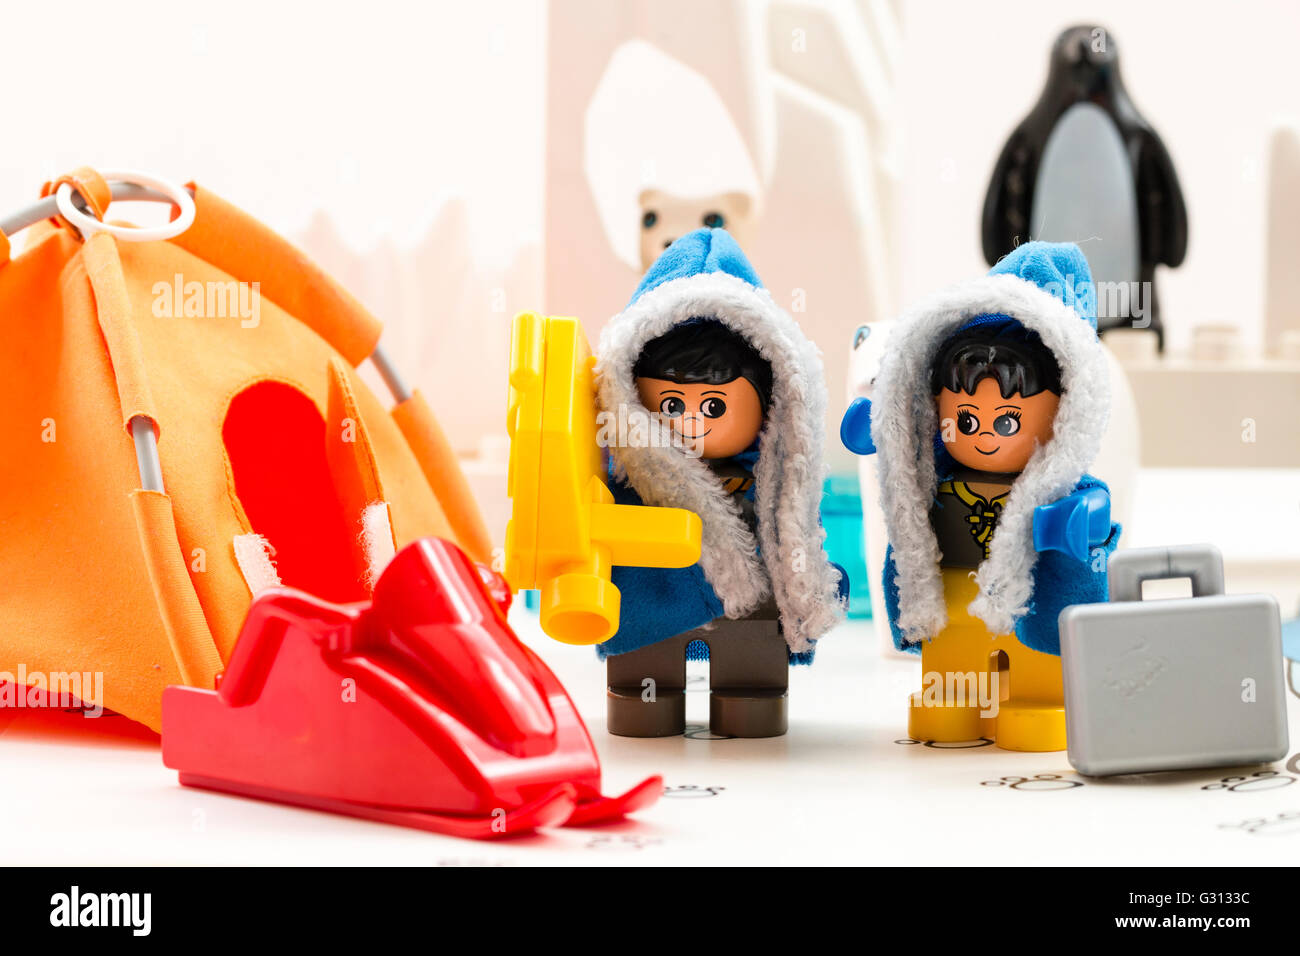 Lego Duplo esplorare artico playset giocattolo. Due personaggi lego, uomo e donna, in base camp, con orso polare, iceberg e penguin dietro. Foto Stock